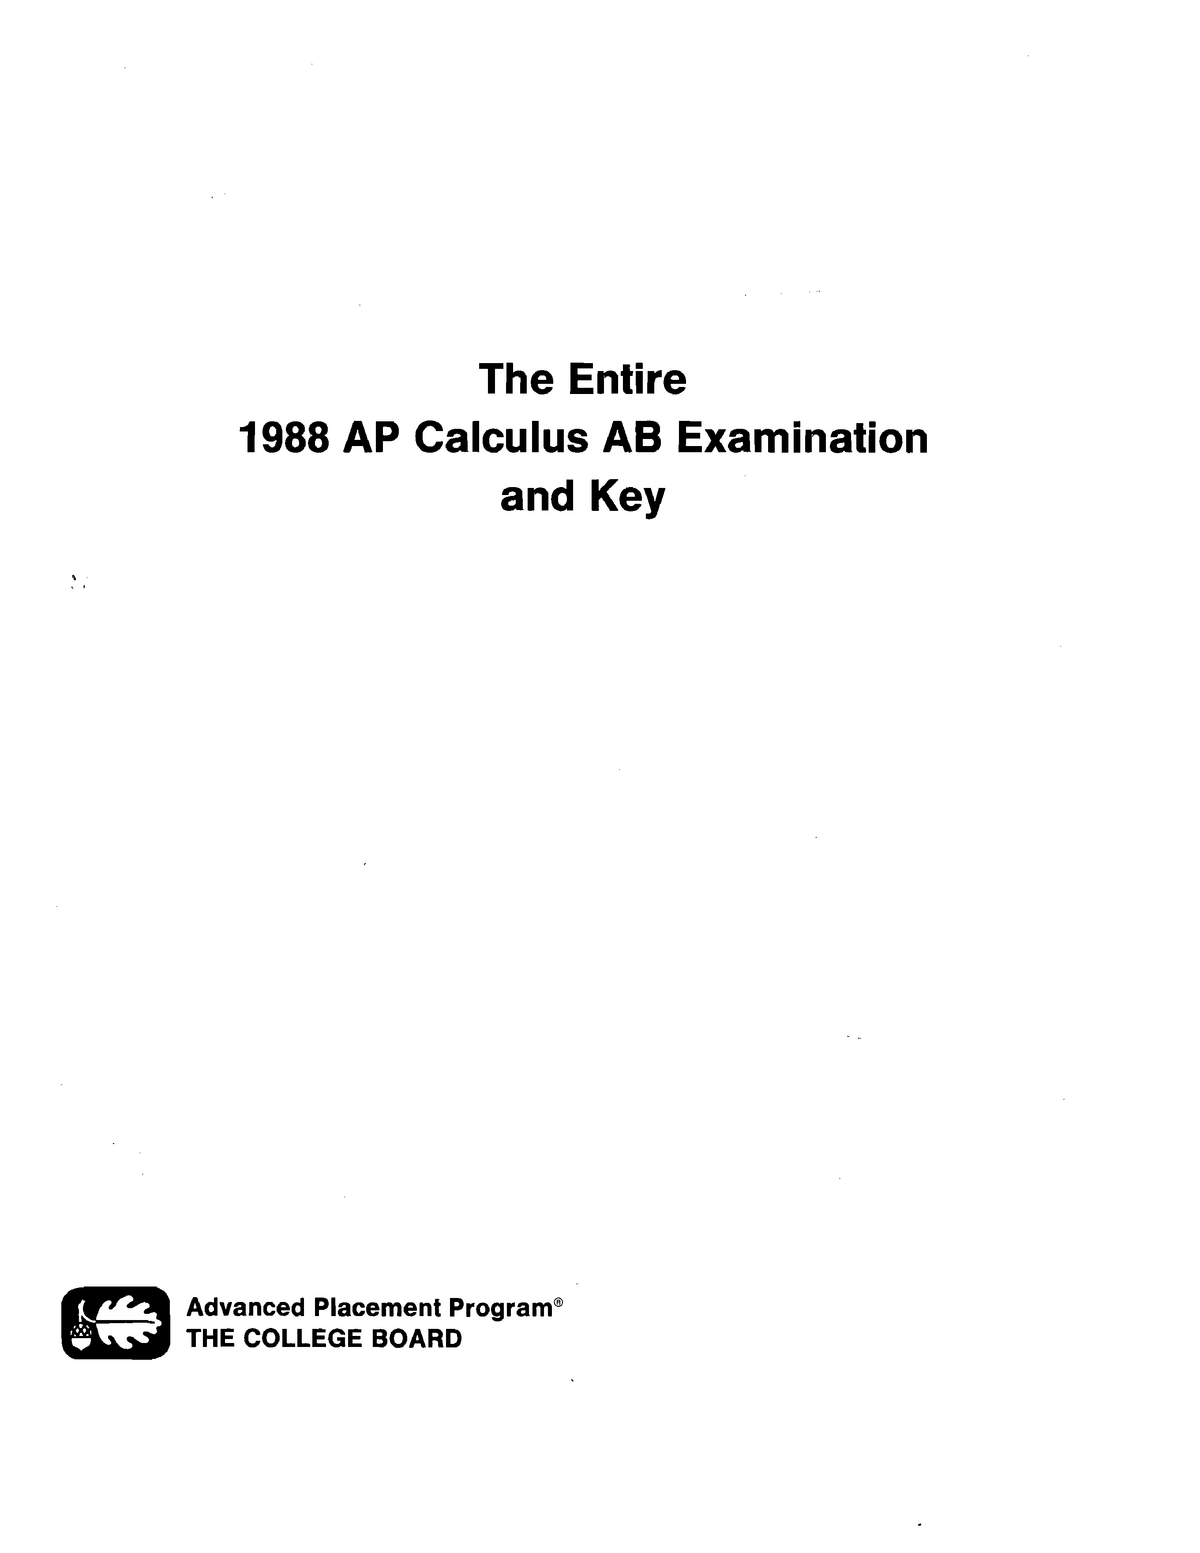 1998 Calc AB Exam AP calc MTH 265 Studocu